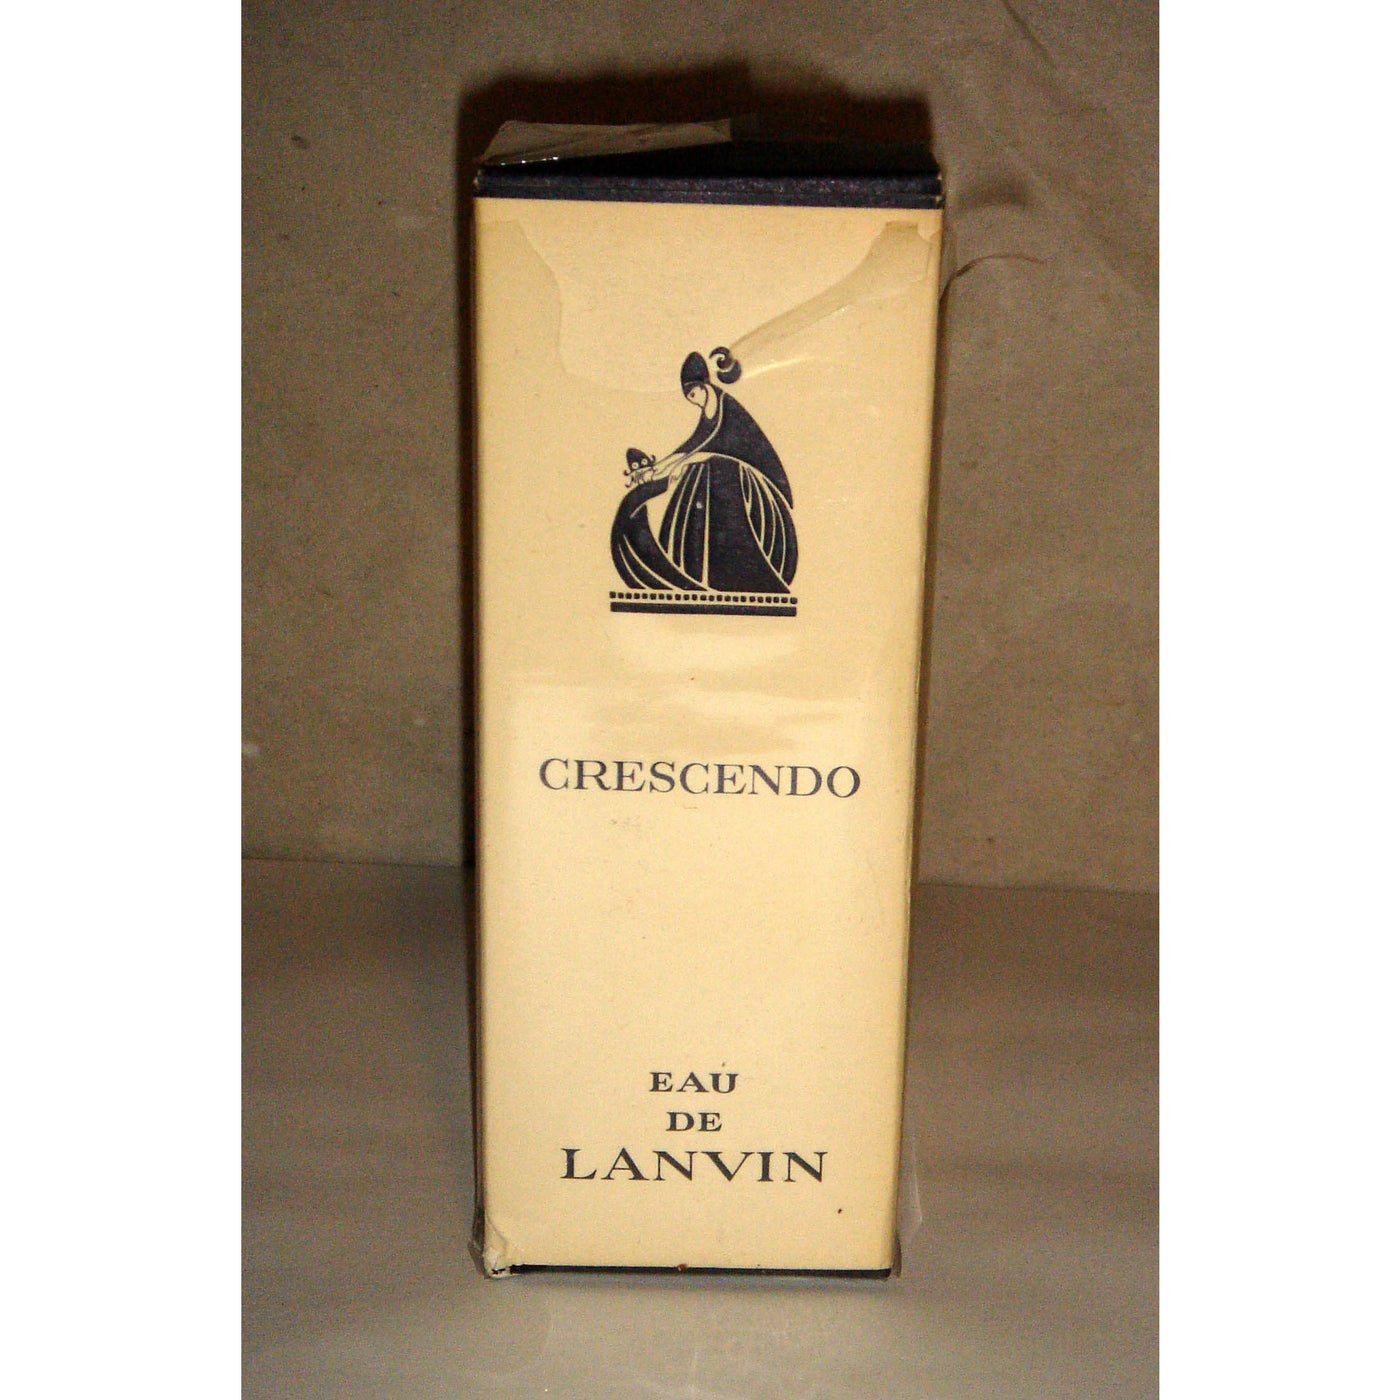 Vintage Lanvin Crescendo